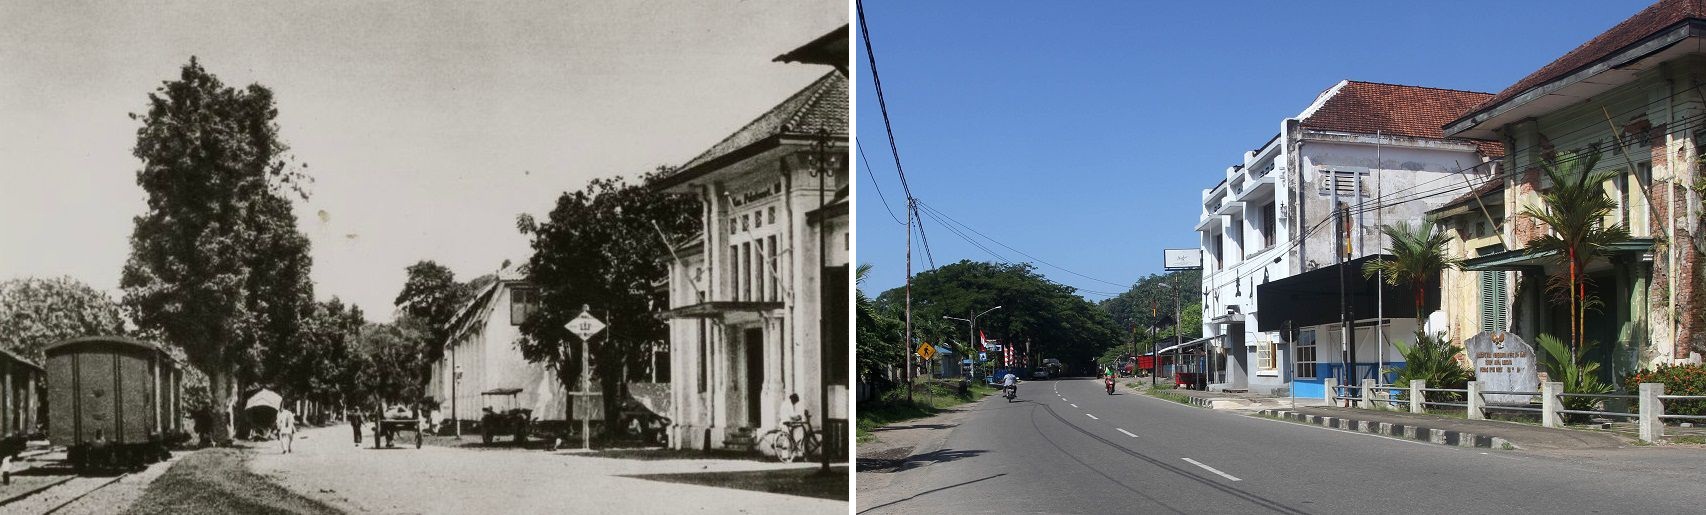 Foto Tepi Batang Arau, Pondok Padang, sekitar tahun 1930-1931 dan tahun 2020